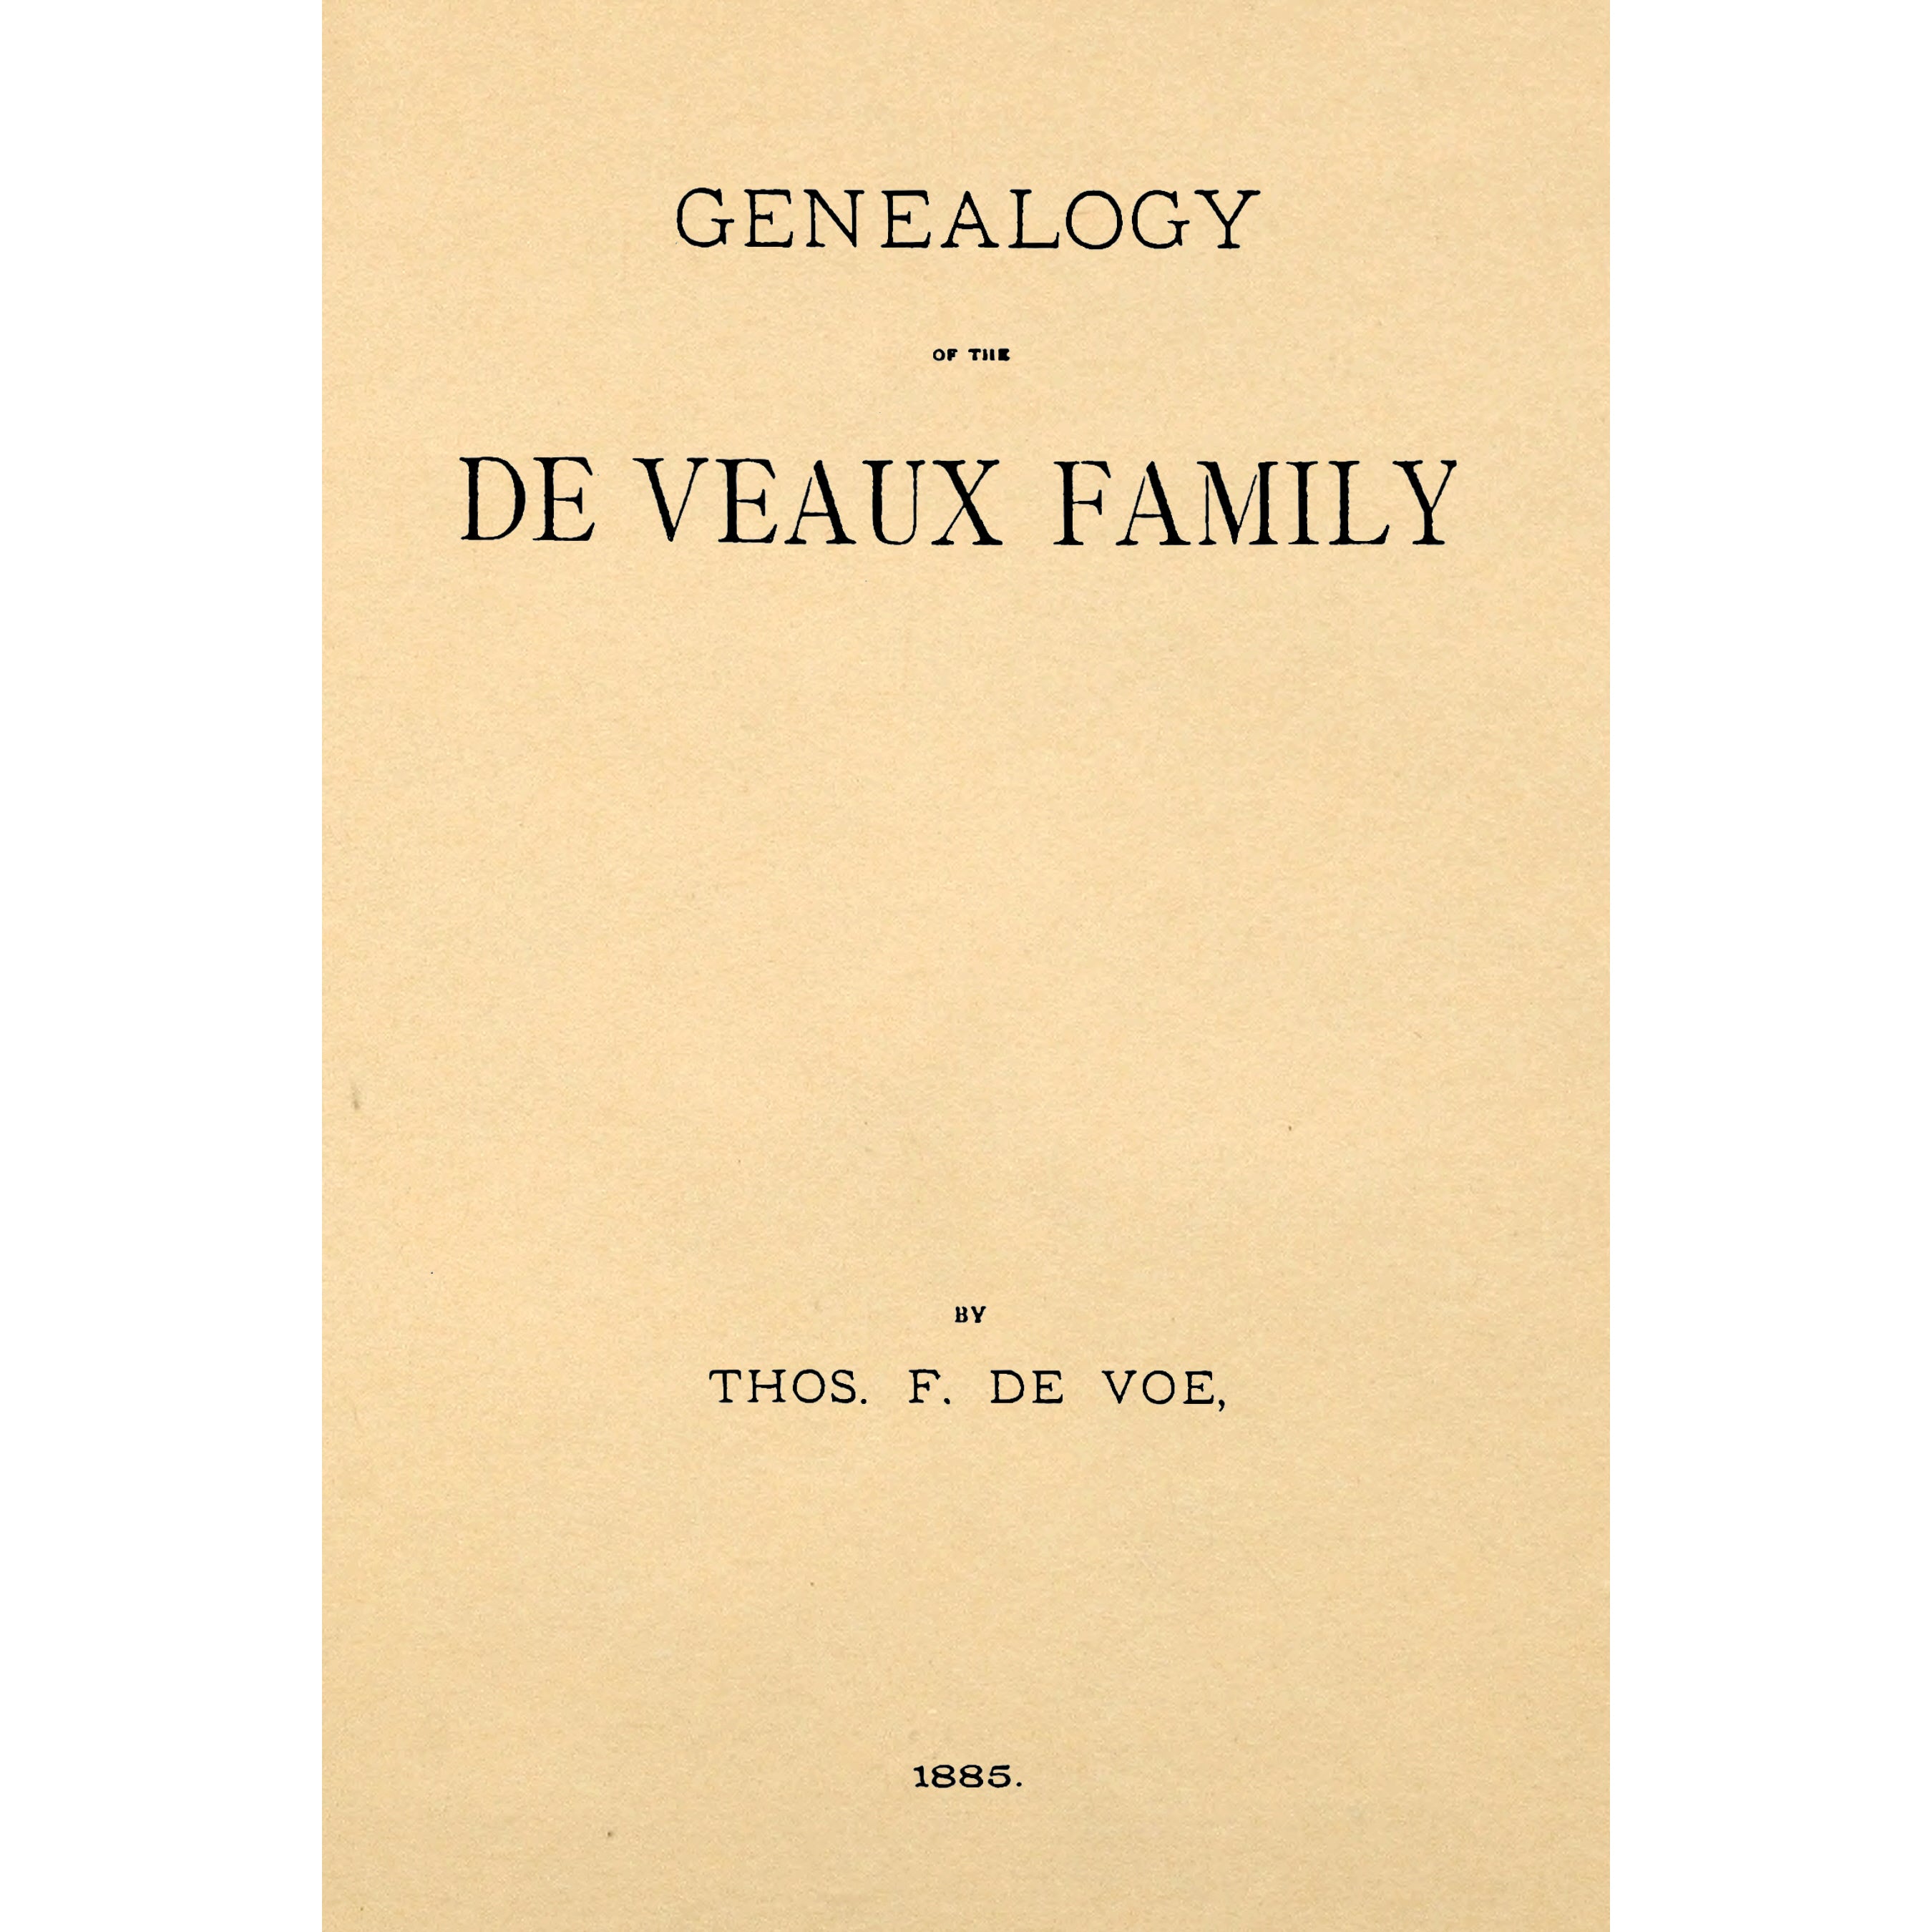 Genealogy of the De Veaux family